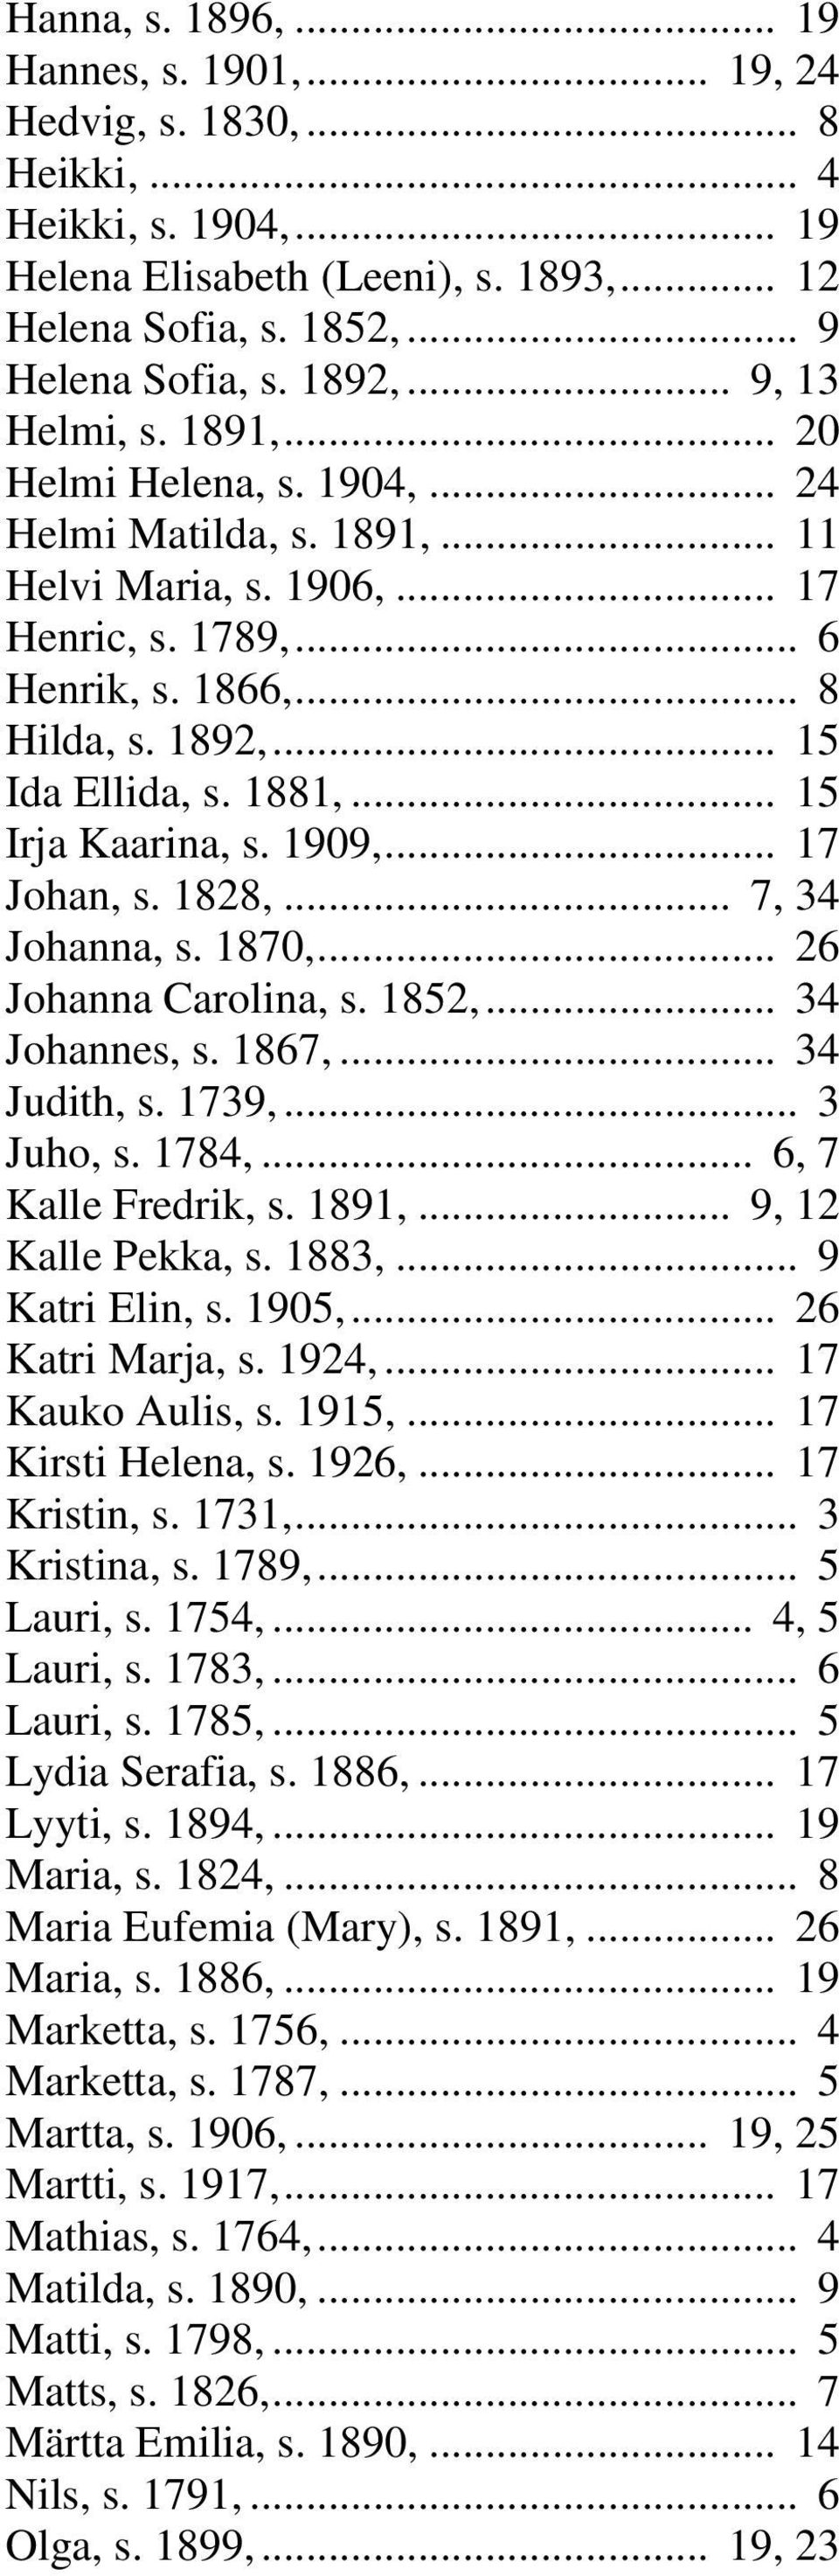 1881,... 15 Irja Kaarina, s. 1909,... 17 Johan, s. 1828,... 7, 34 Johanna, s. 1870,... 26 Johanna Carolina, s. 1852,... 34 Johannes, s. 1867,... 34 Judith, s. 1739,... 3 Juho, s. 1784,.